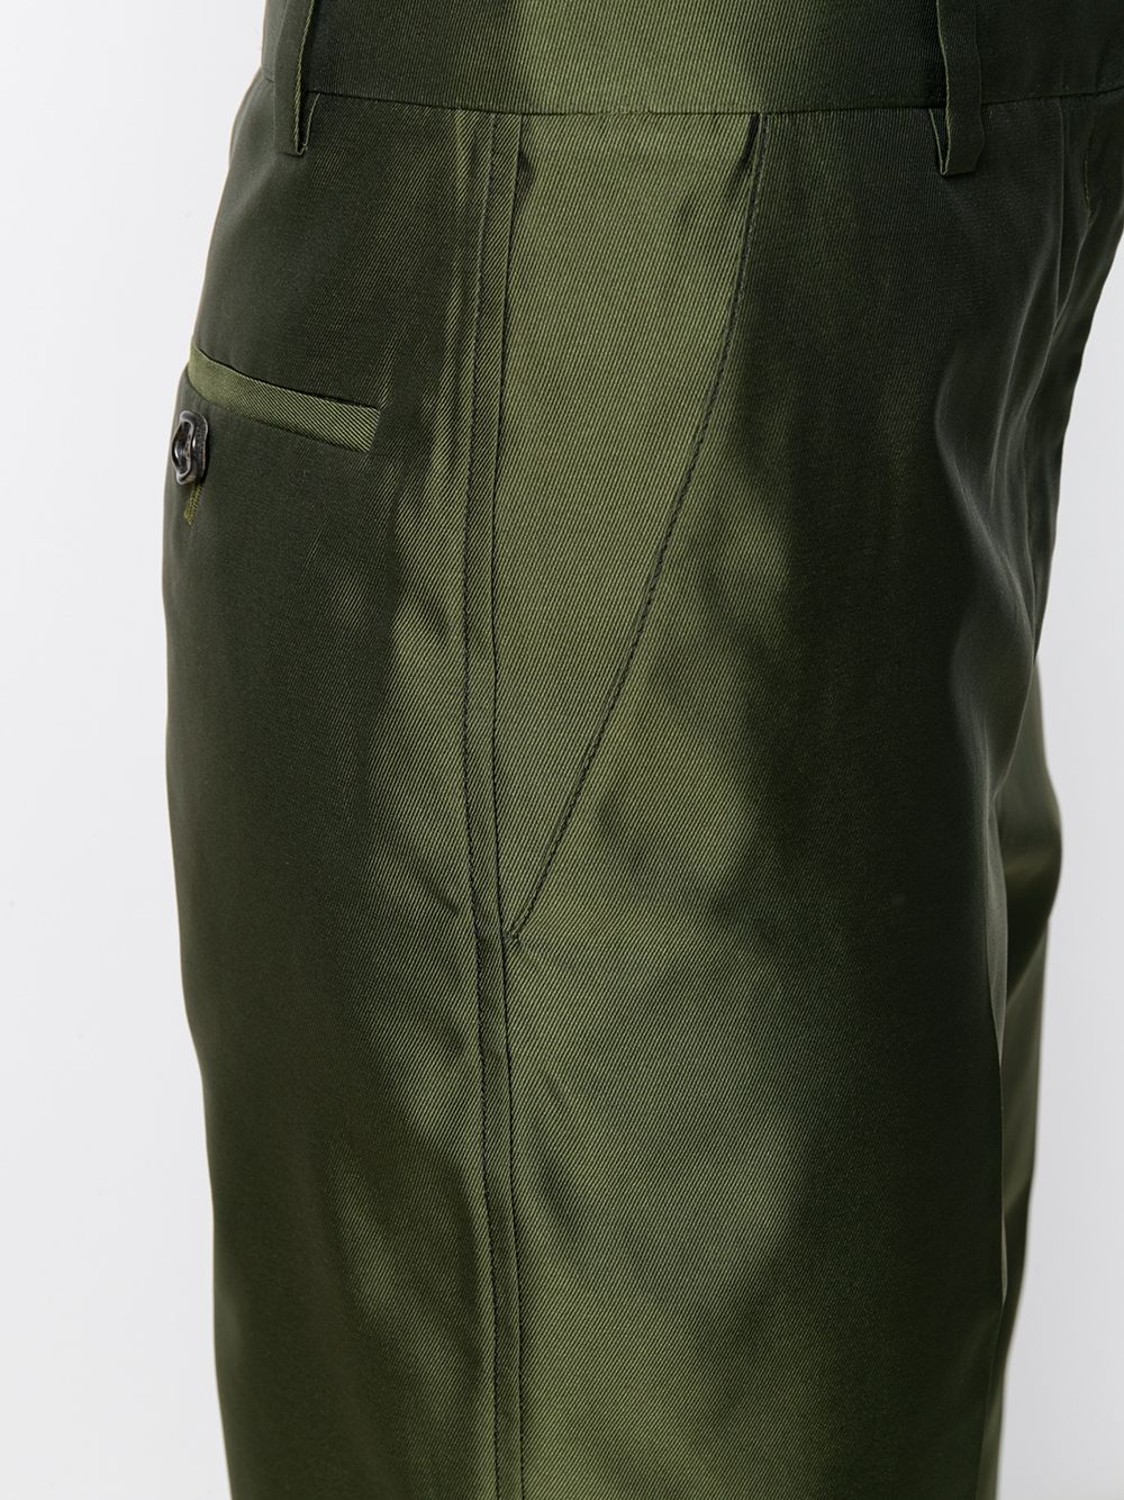 shop Marni Saldi Pantaloni: Pantalone Marni, in seta, verde, quattro tasche, lunghezza regolare, fit regolare.

Composizione: 100% seta. number 1633